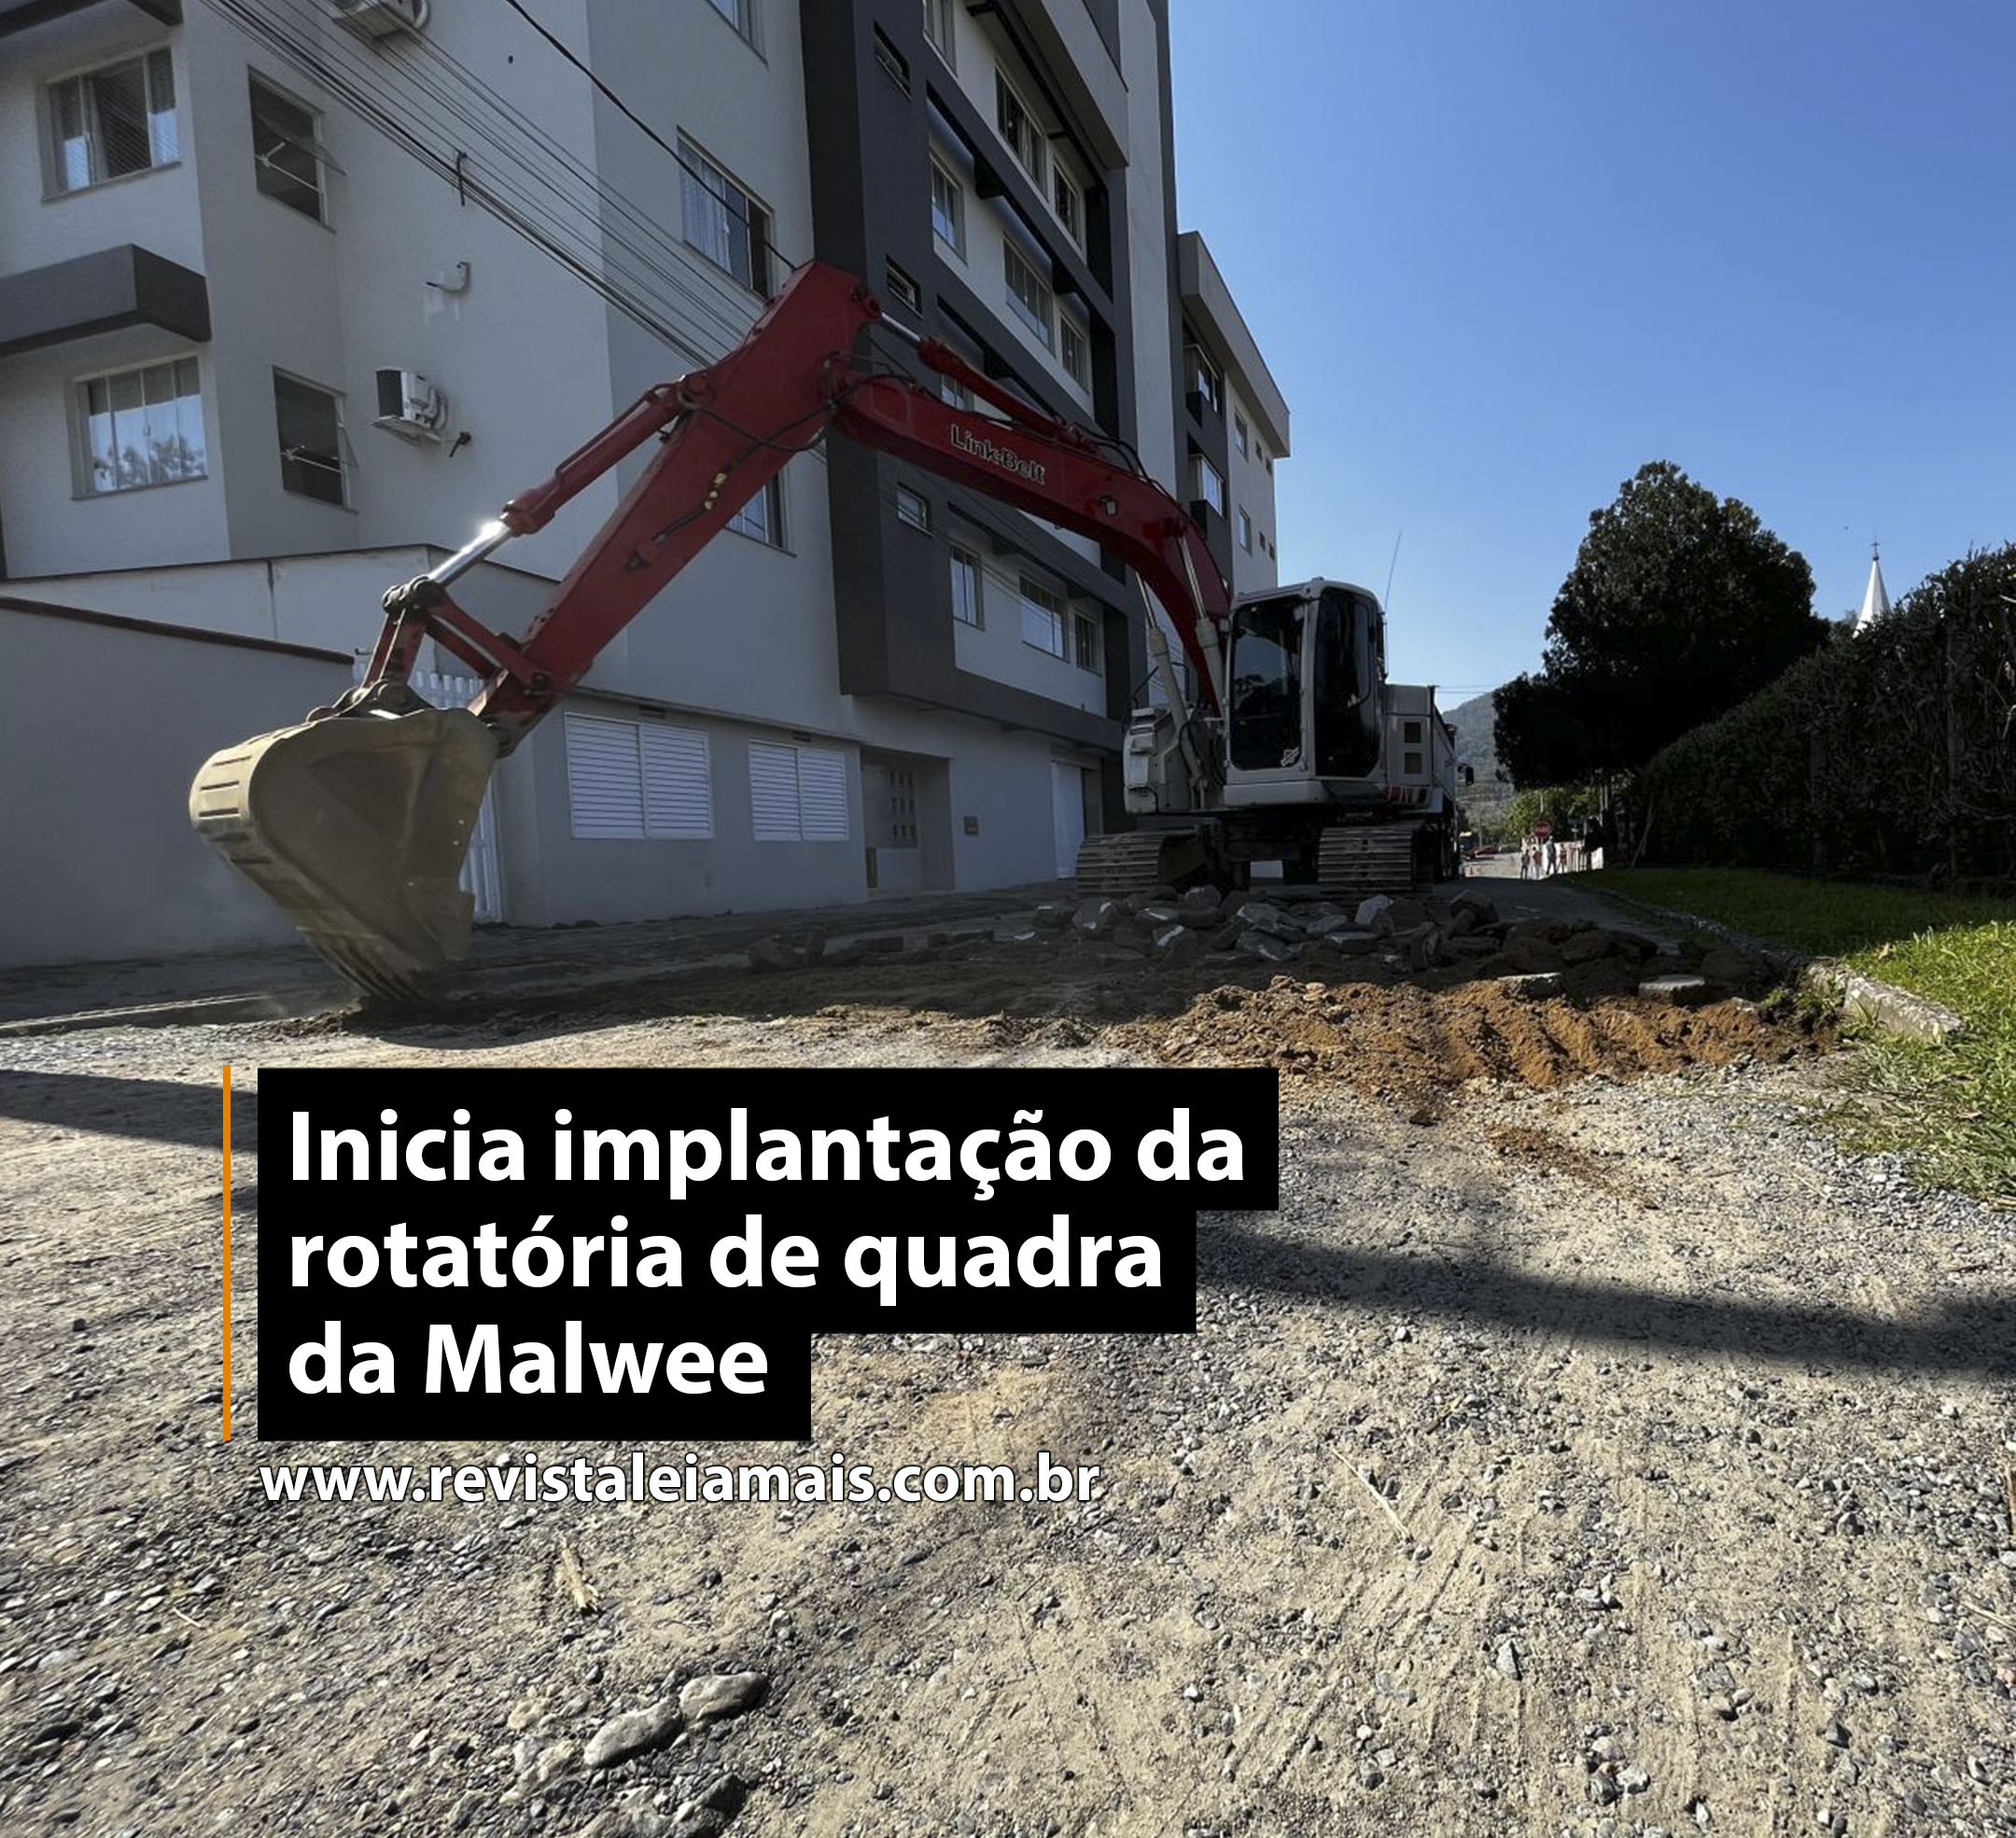 Inicia implantação da rotatória de quadra da Malwee